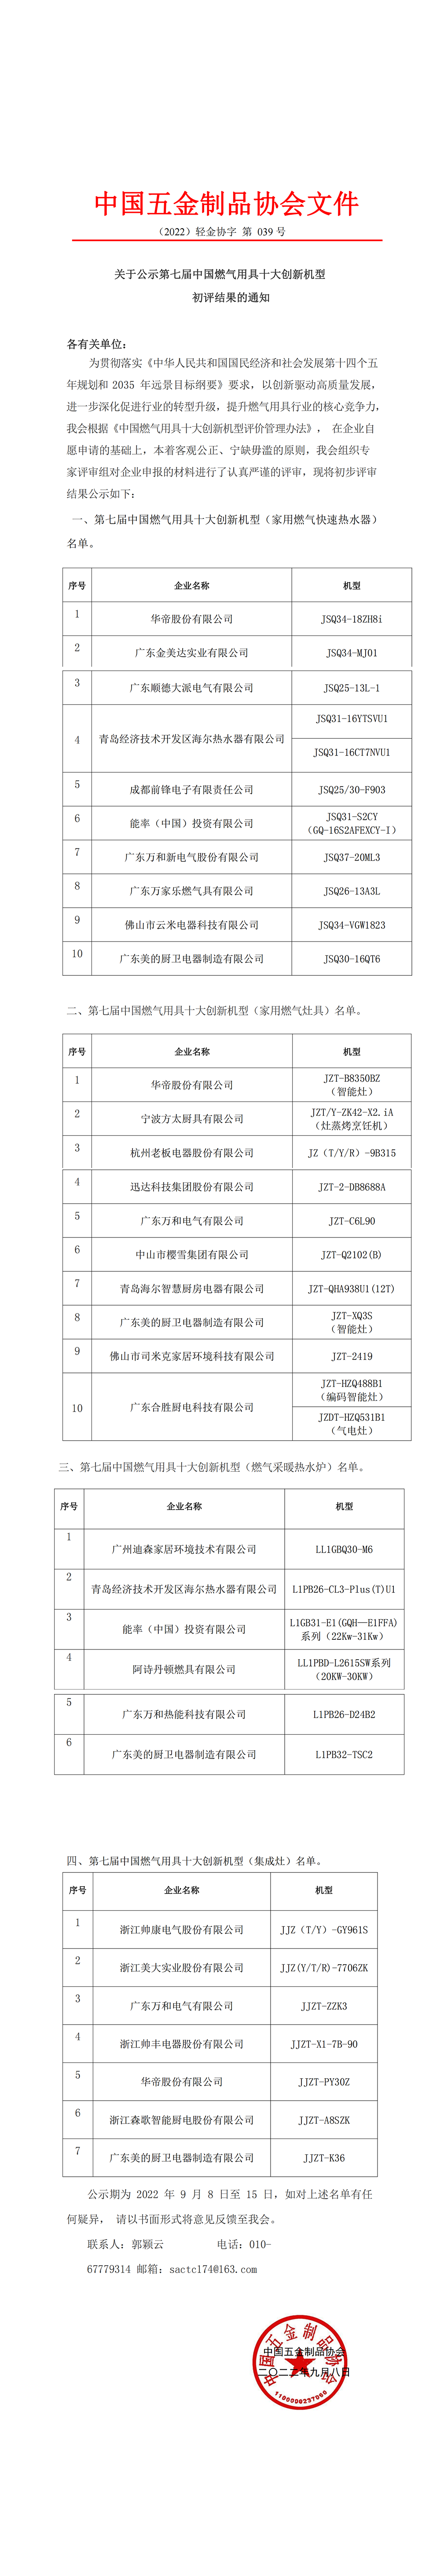 关于公示第七届中国燃气用具十大创新机型初评结果的通知.png